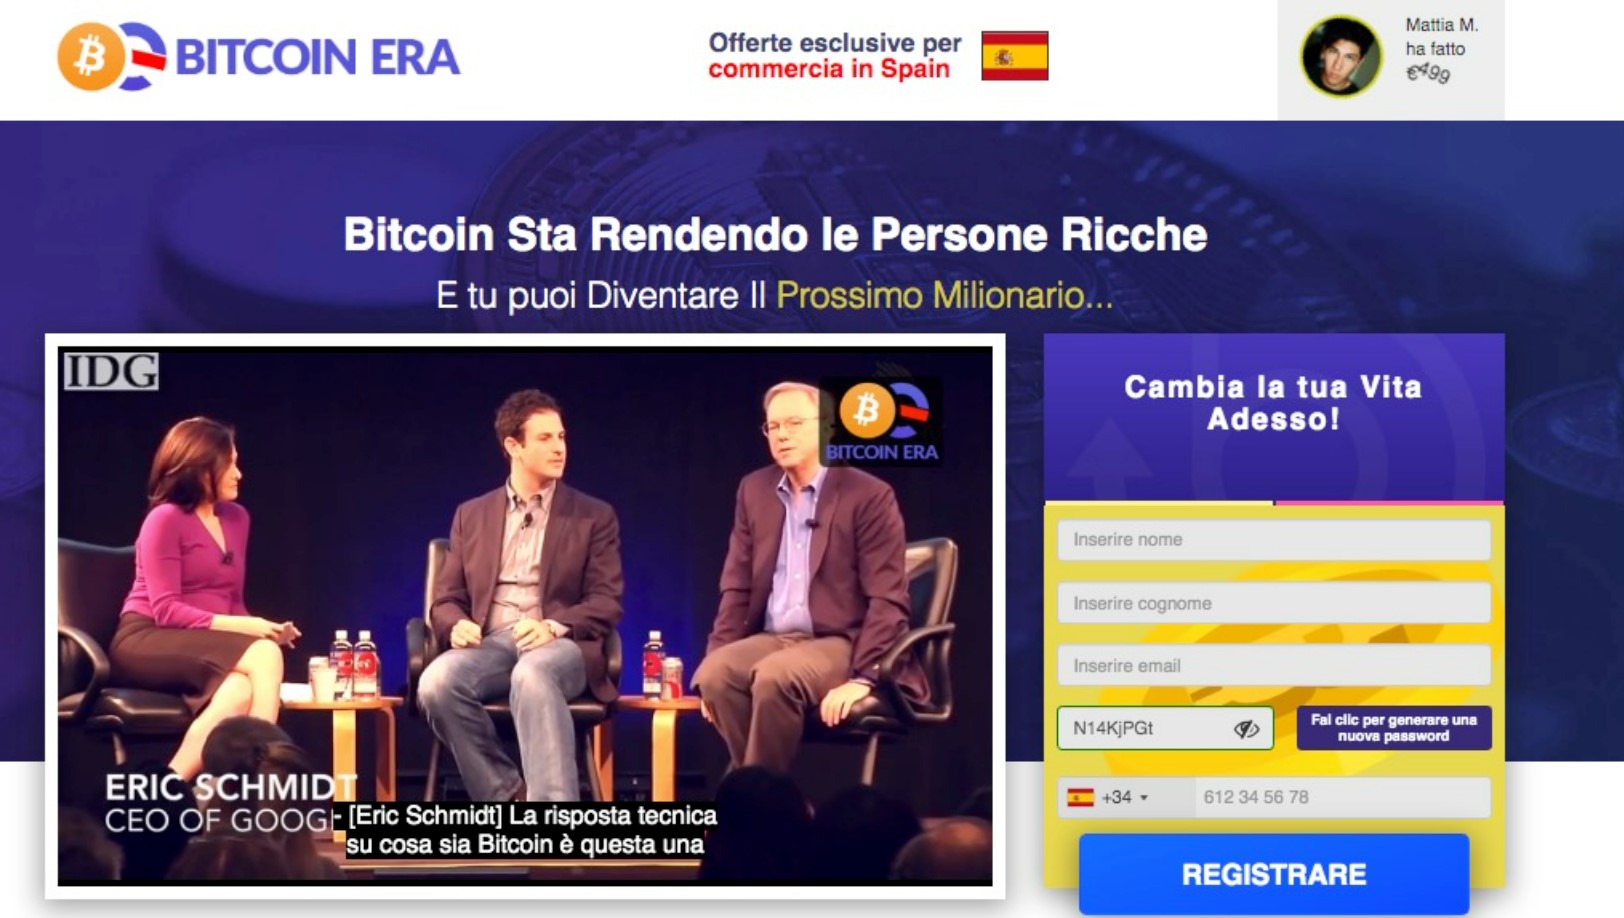 Bitcoin Era sito ufficiale